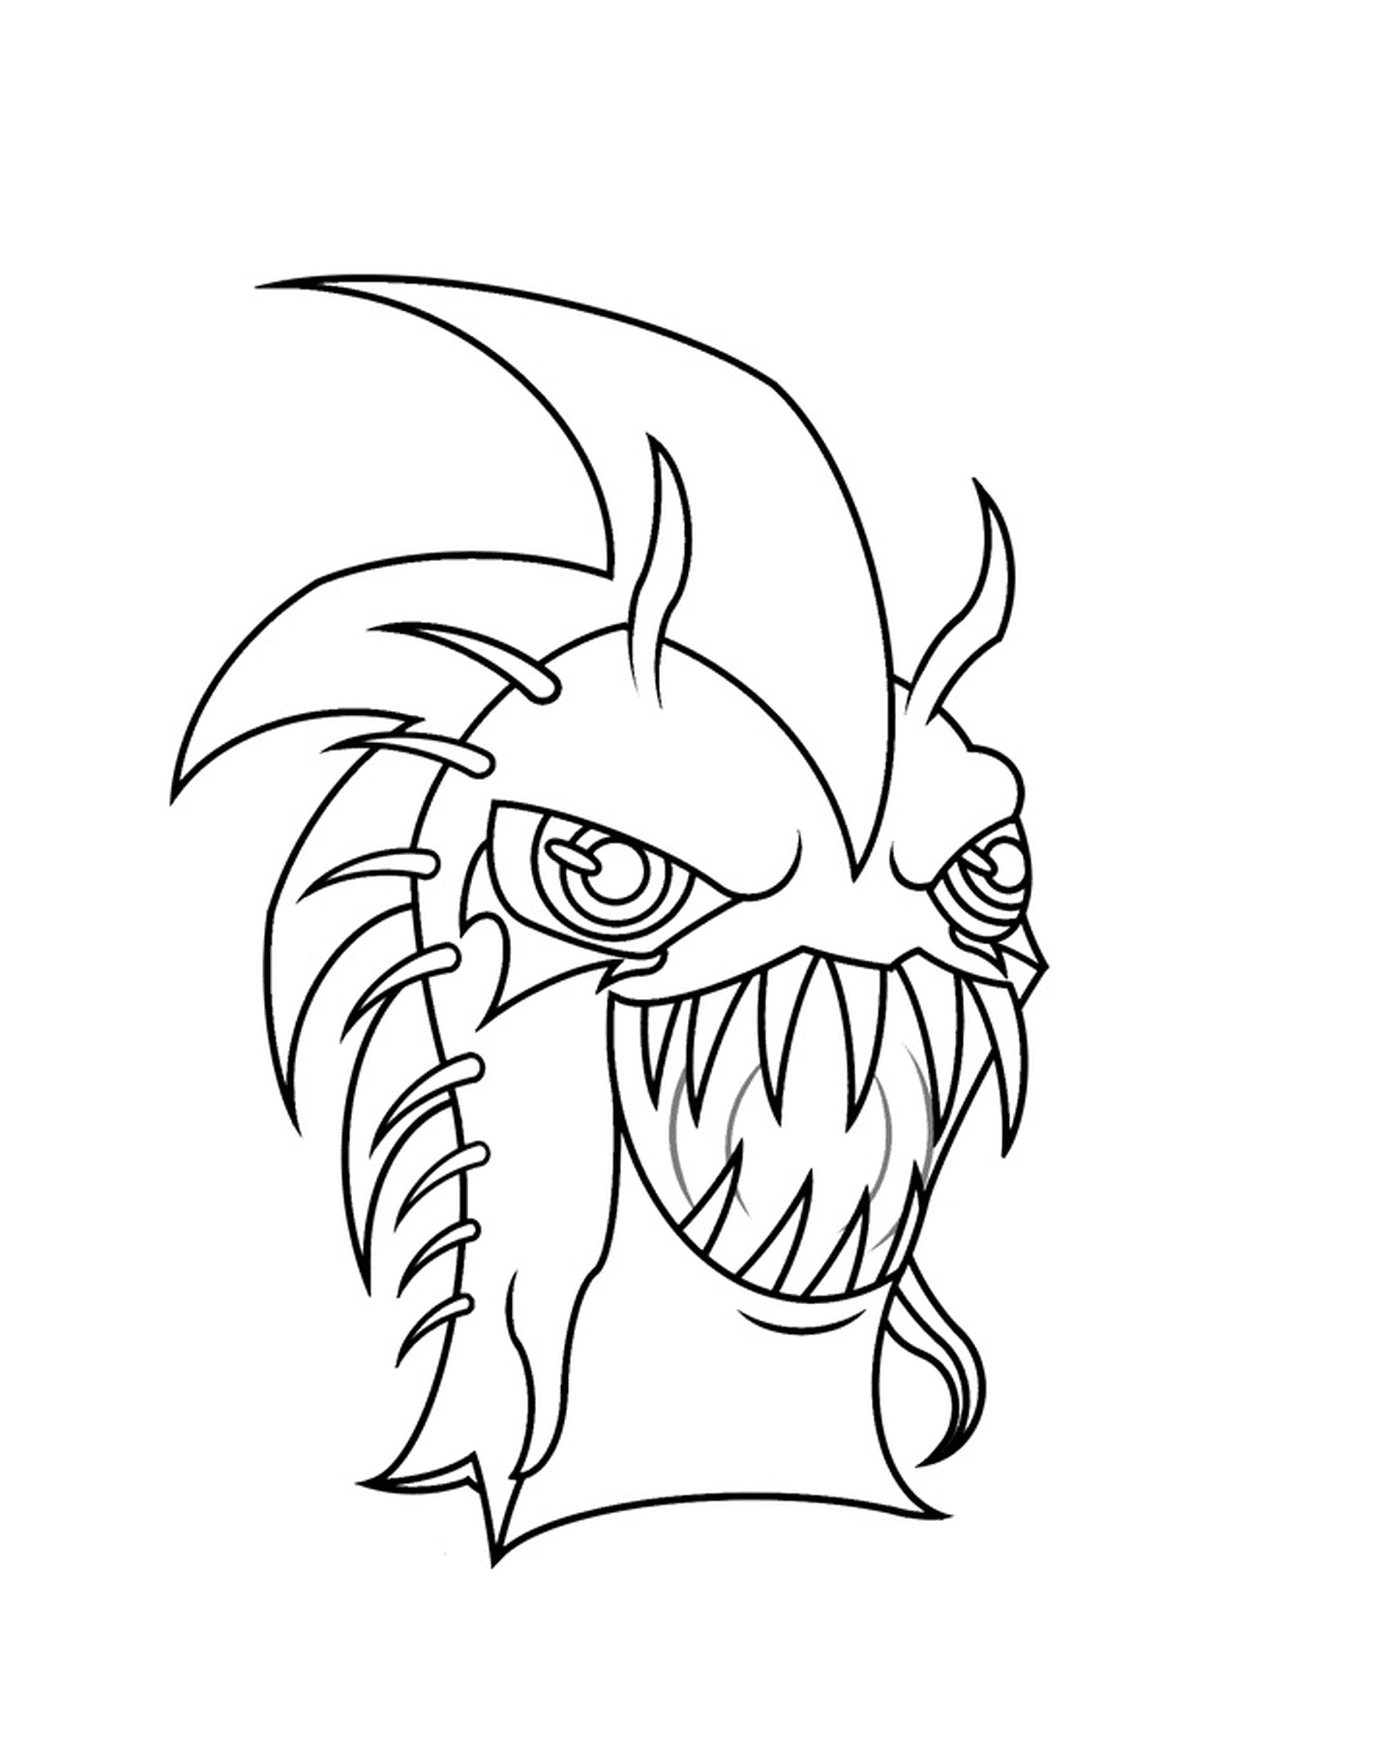  Dunkle Urchin, Monster mit einem großen Mund 